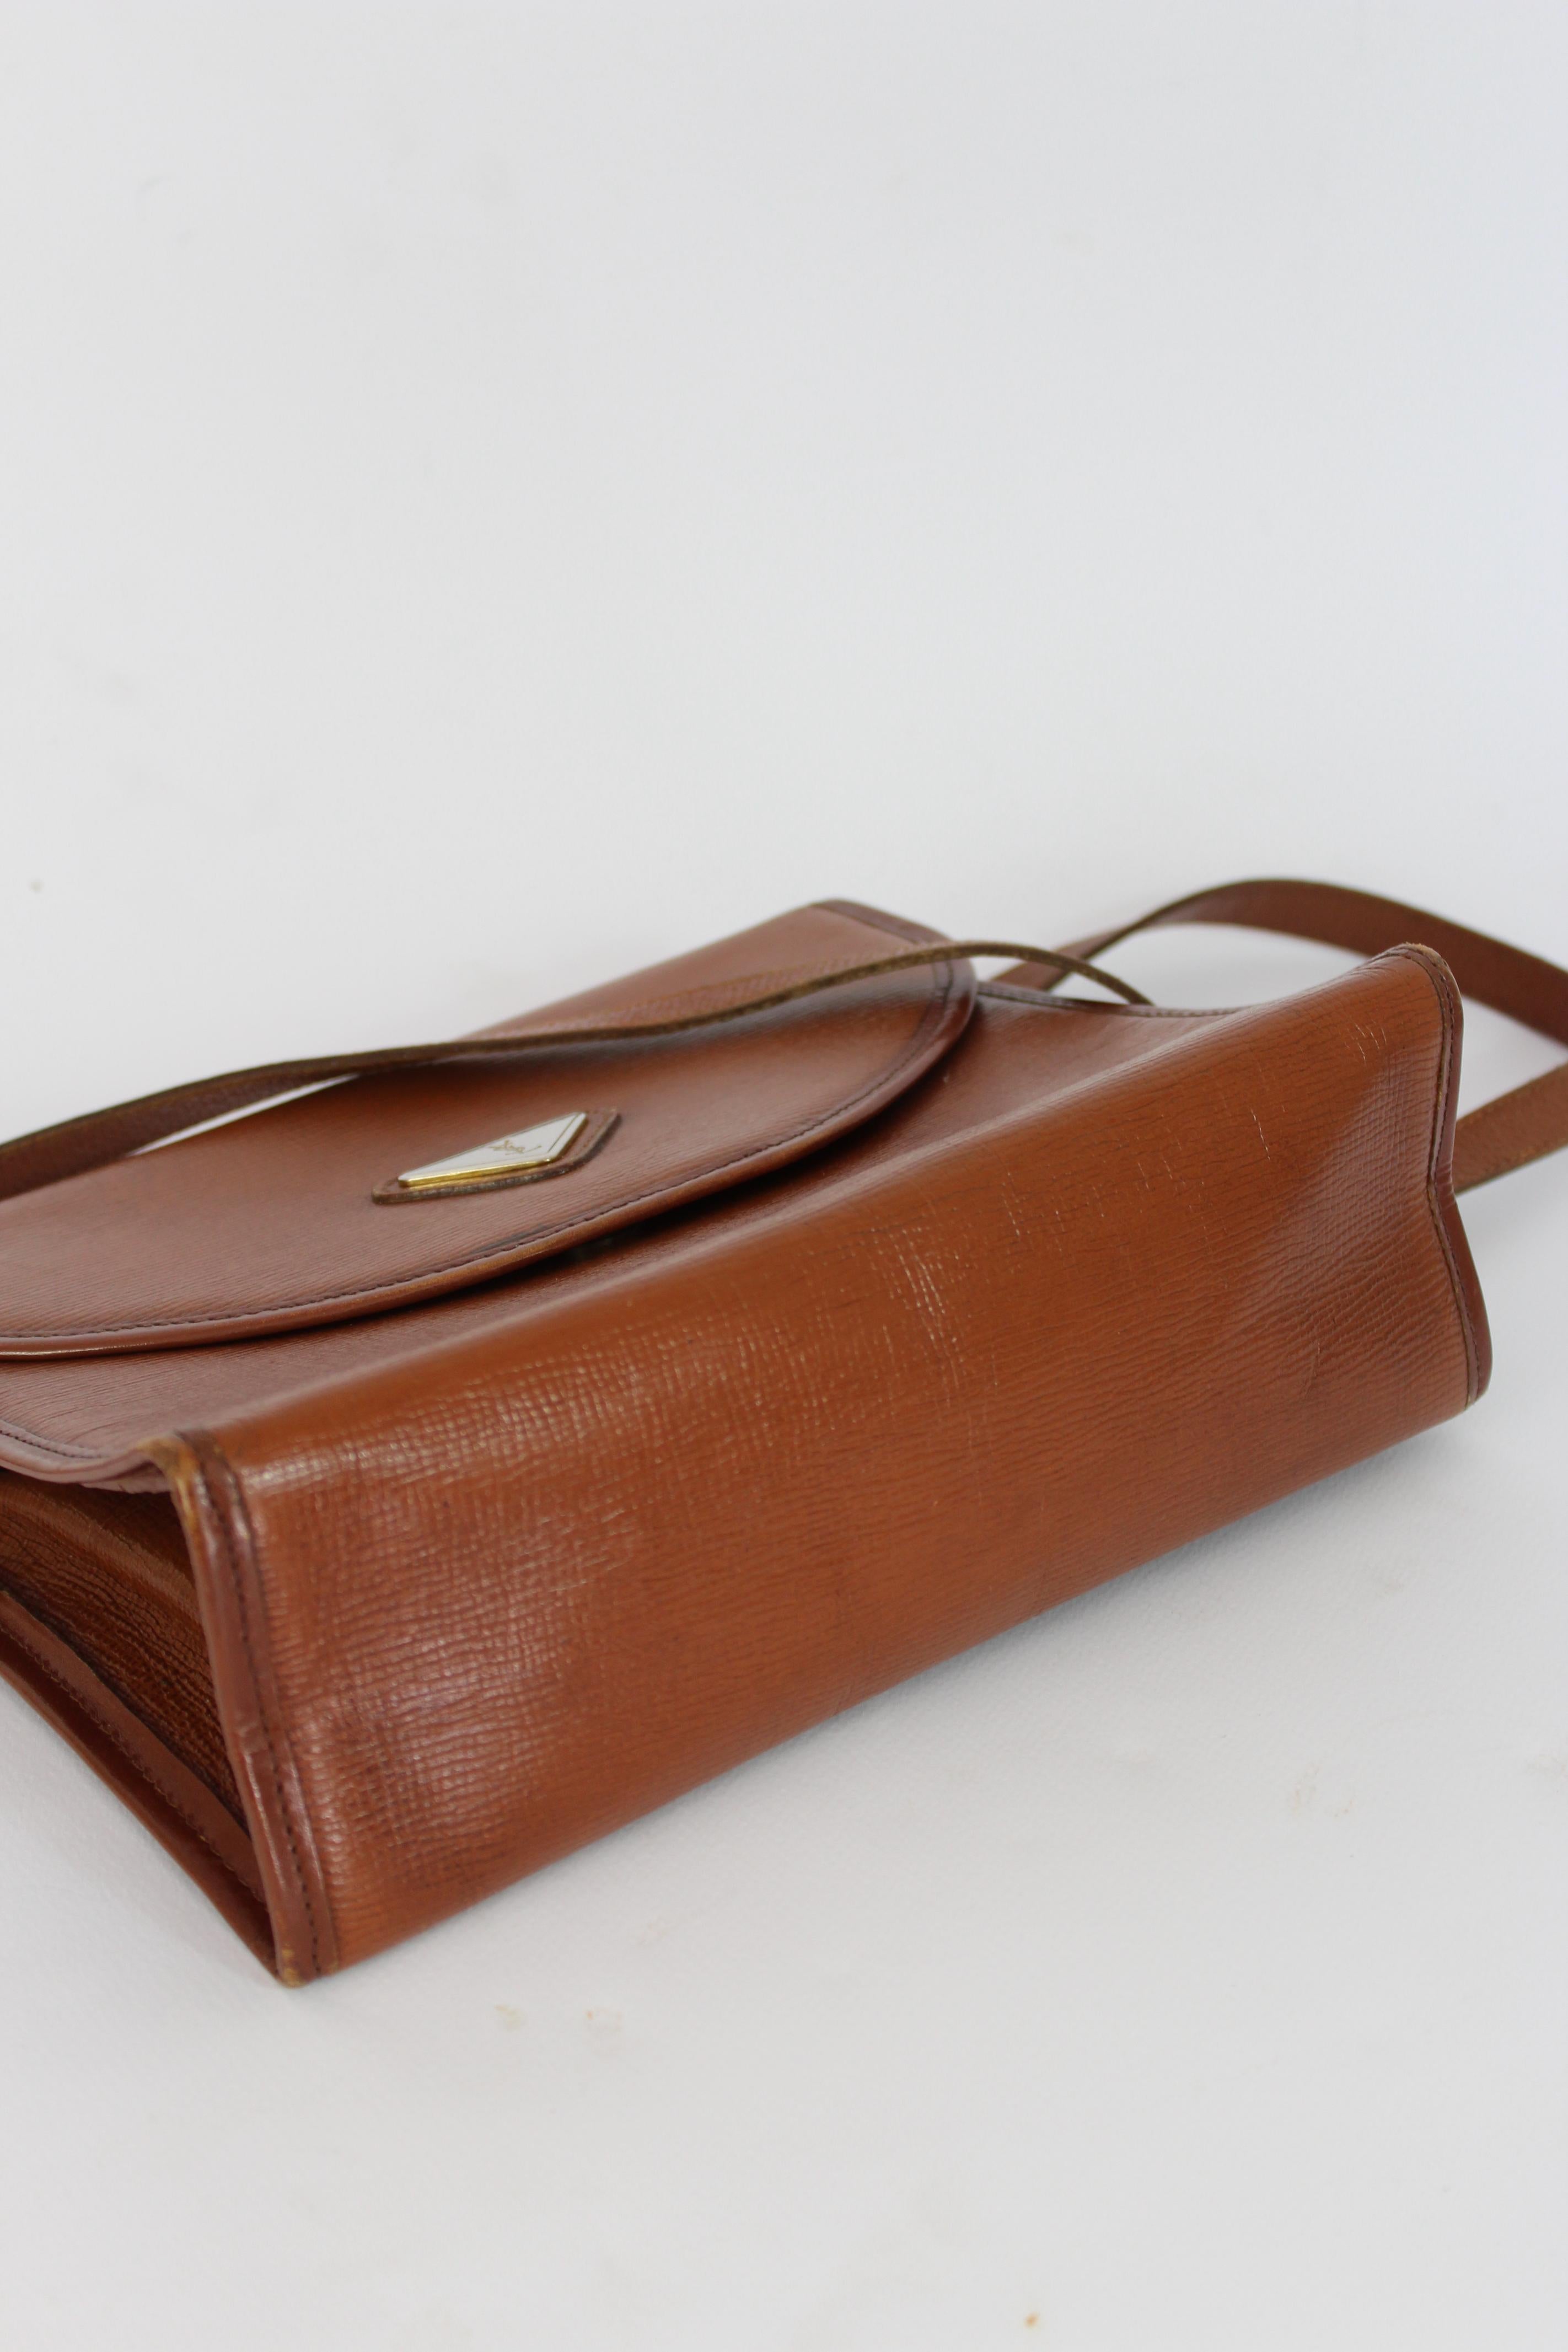 Yves Saint Laurent Brown Leather Shoulder Bag 1980s  2